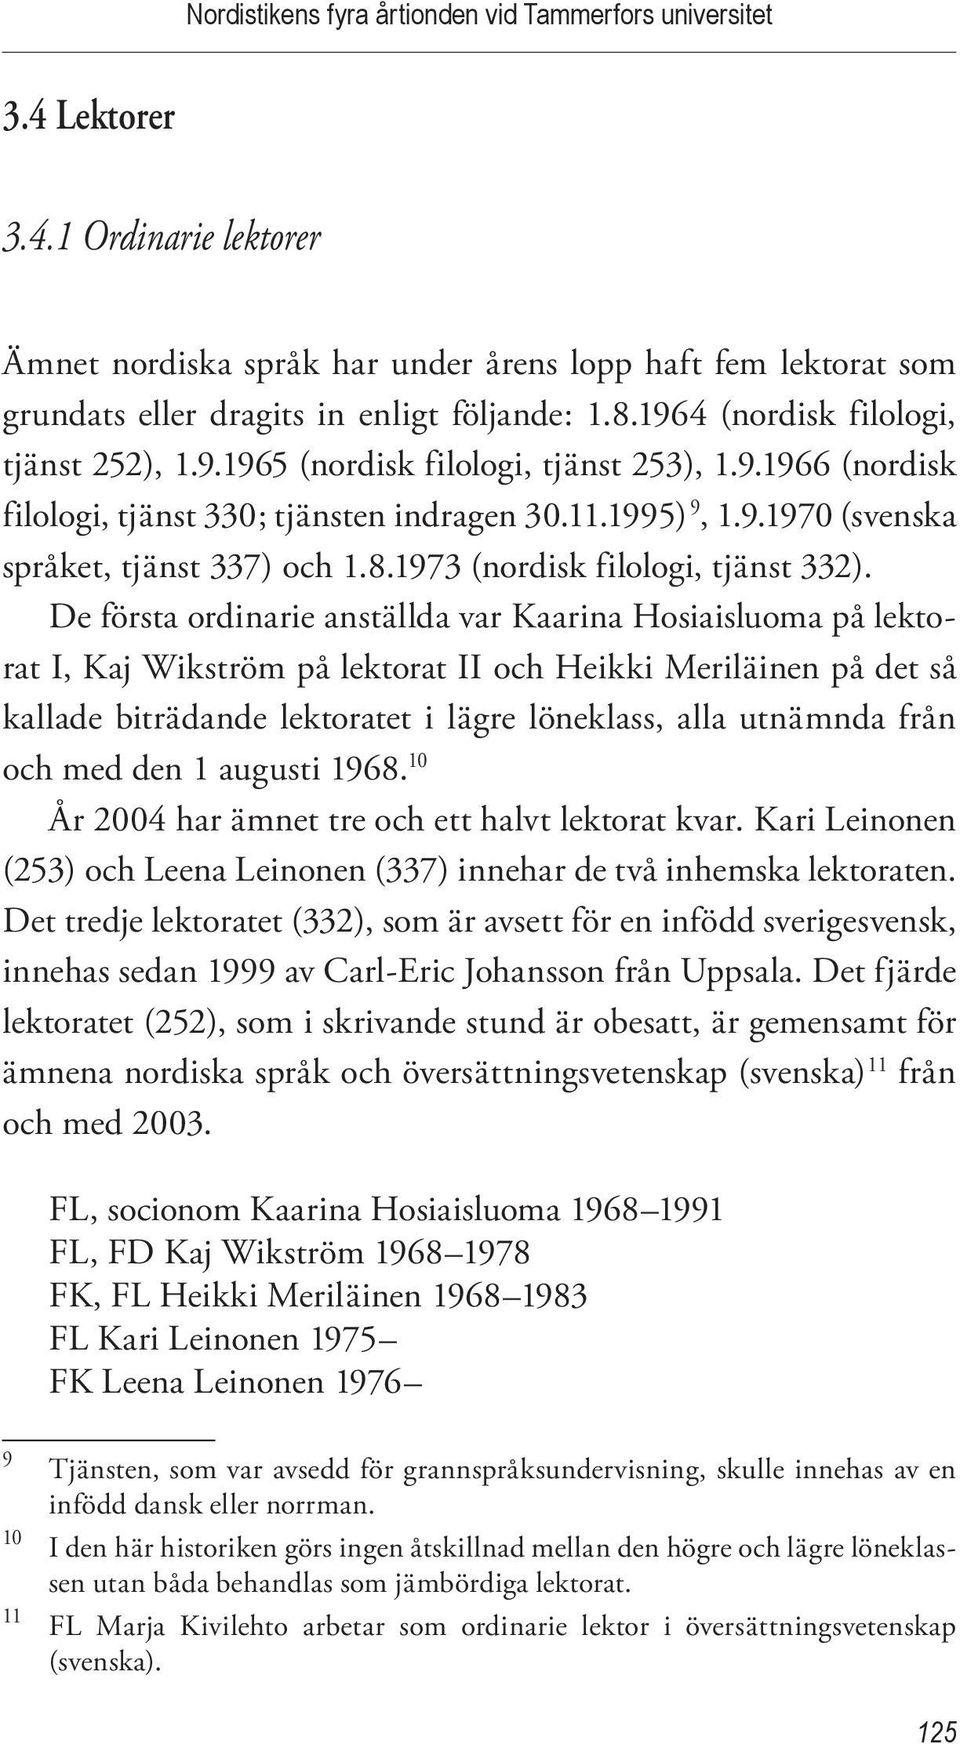 De första ordinarie anställda var Kaarina Hosiaisluoma på lektorat I, Kaj Wikström på lektorat II och Heikki Meriläinen på det så kallade biträdande lektoratet i lägre löneklass, alla utnämnda från